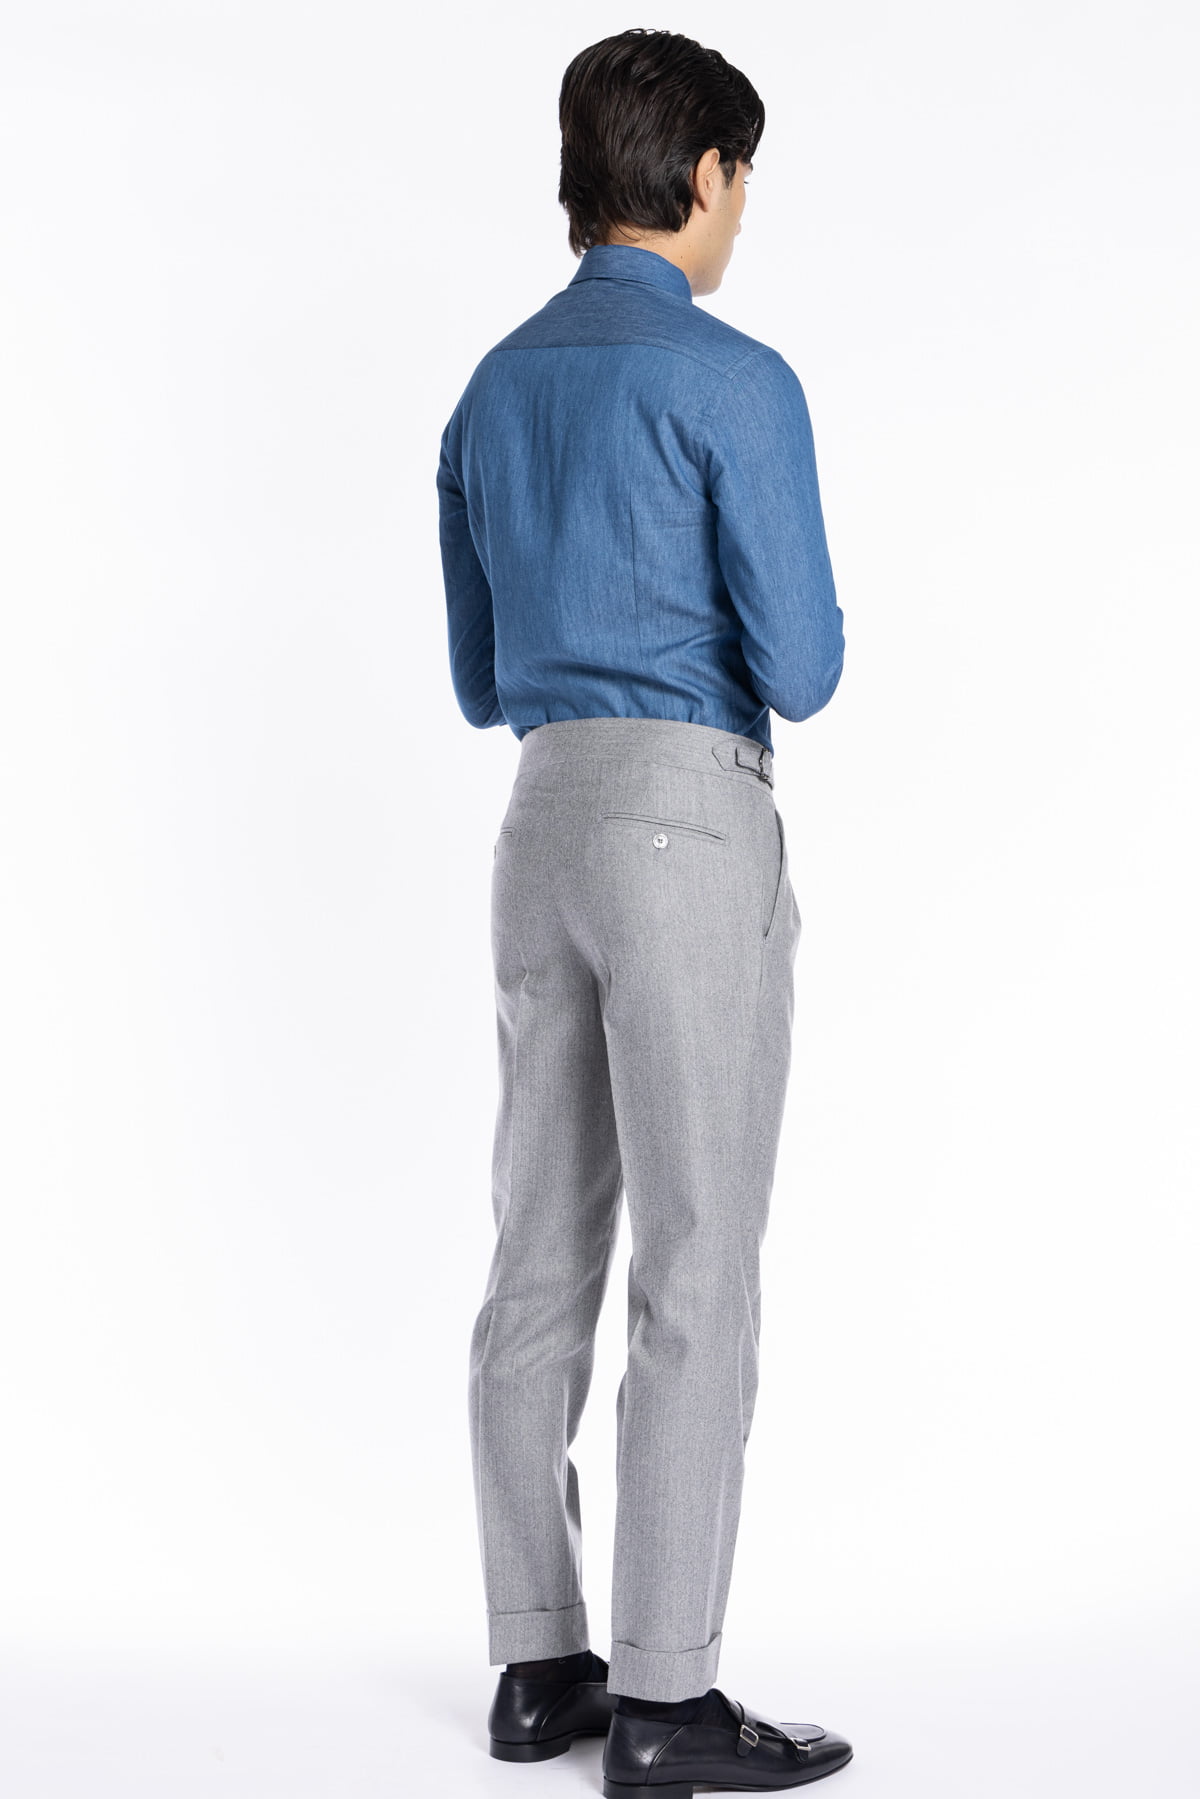 Pantalone uomo grigio spigato vita alta tasca america in lana flanella Holland & Sherry con doppia pinces e fibbie laterali regolabili